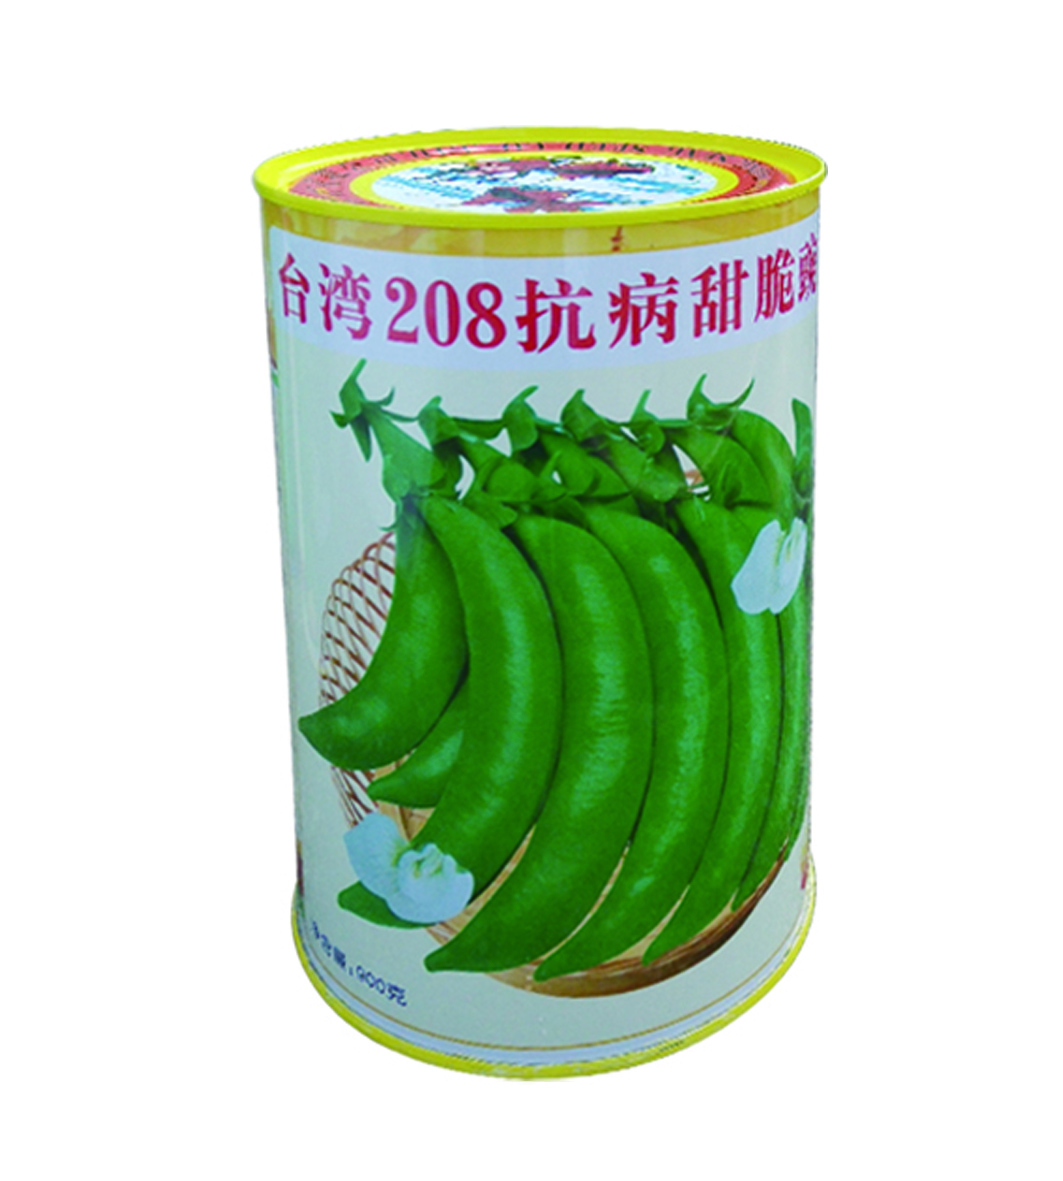 台湾208抗病甜脆豌豆900g